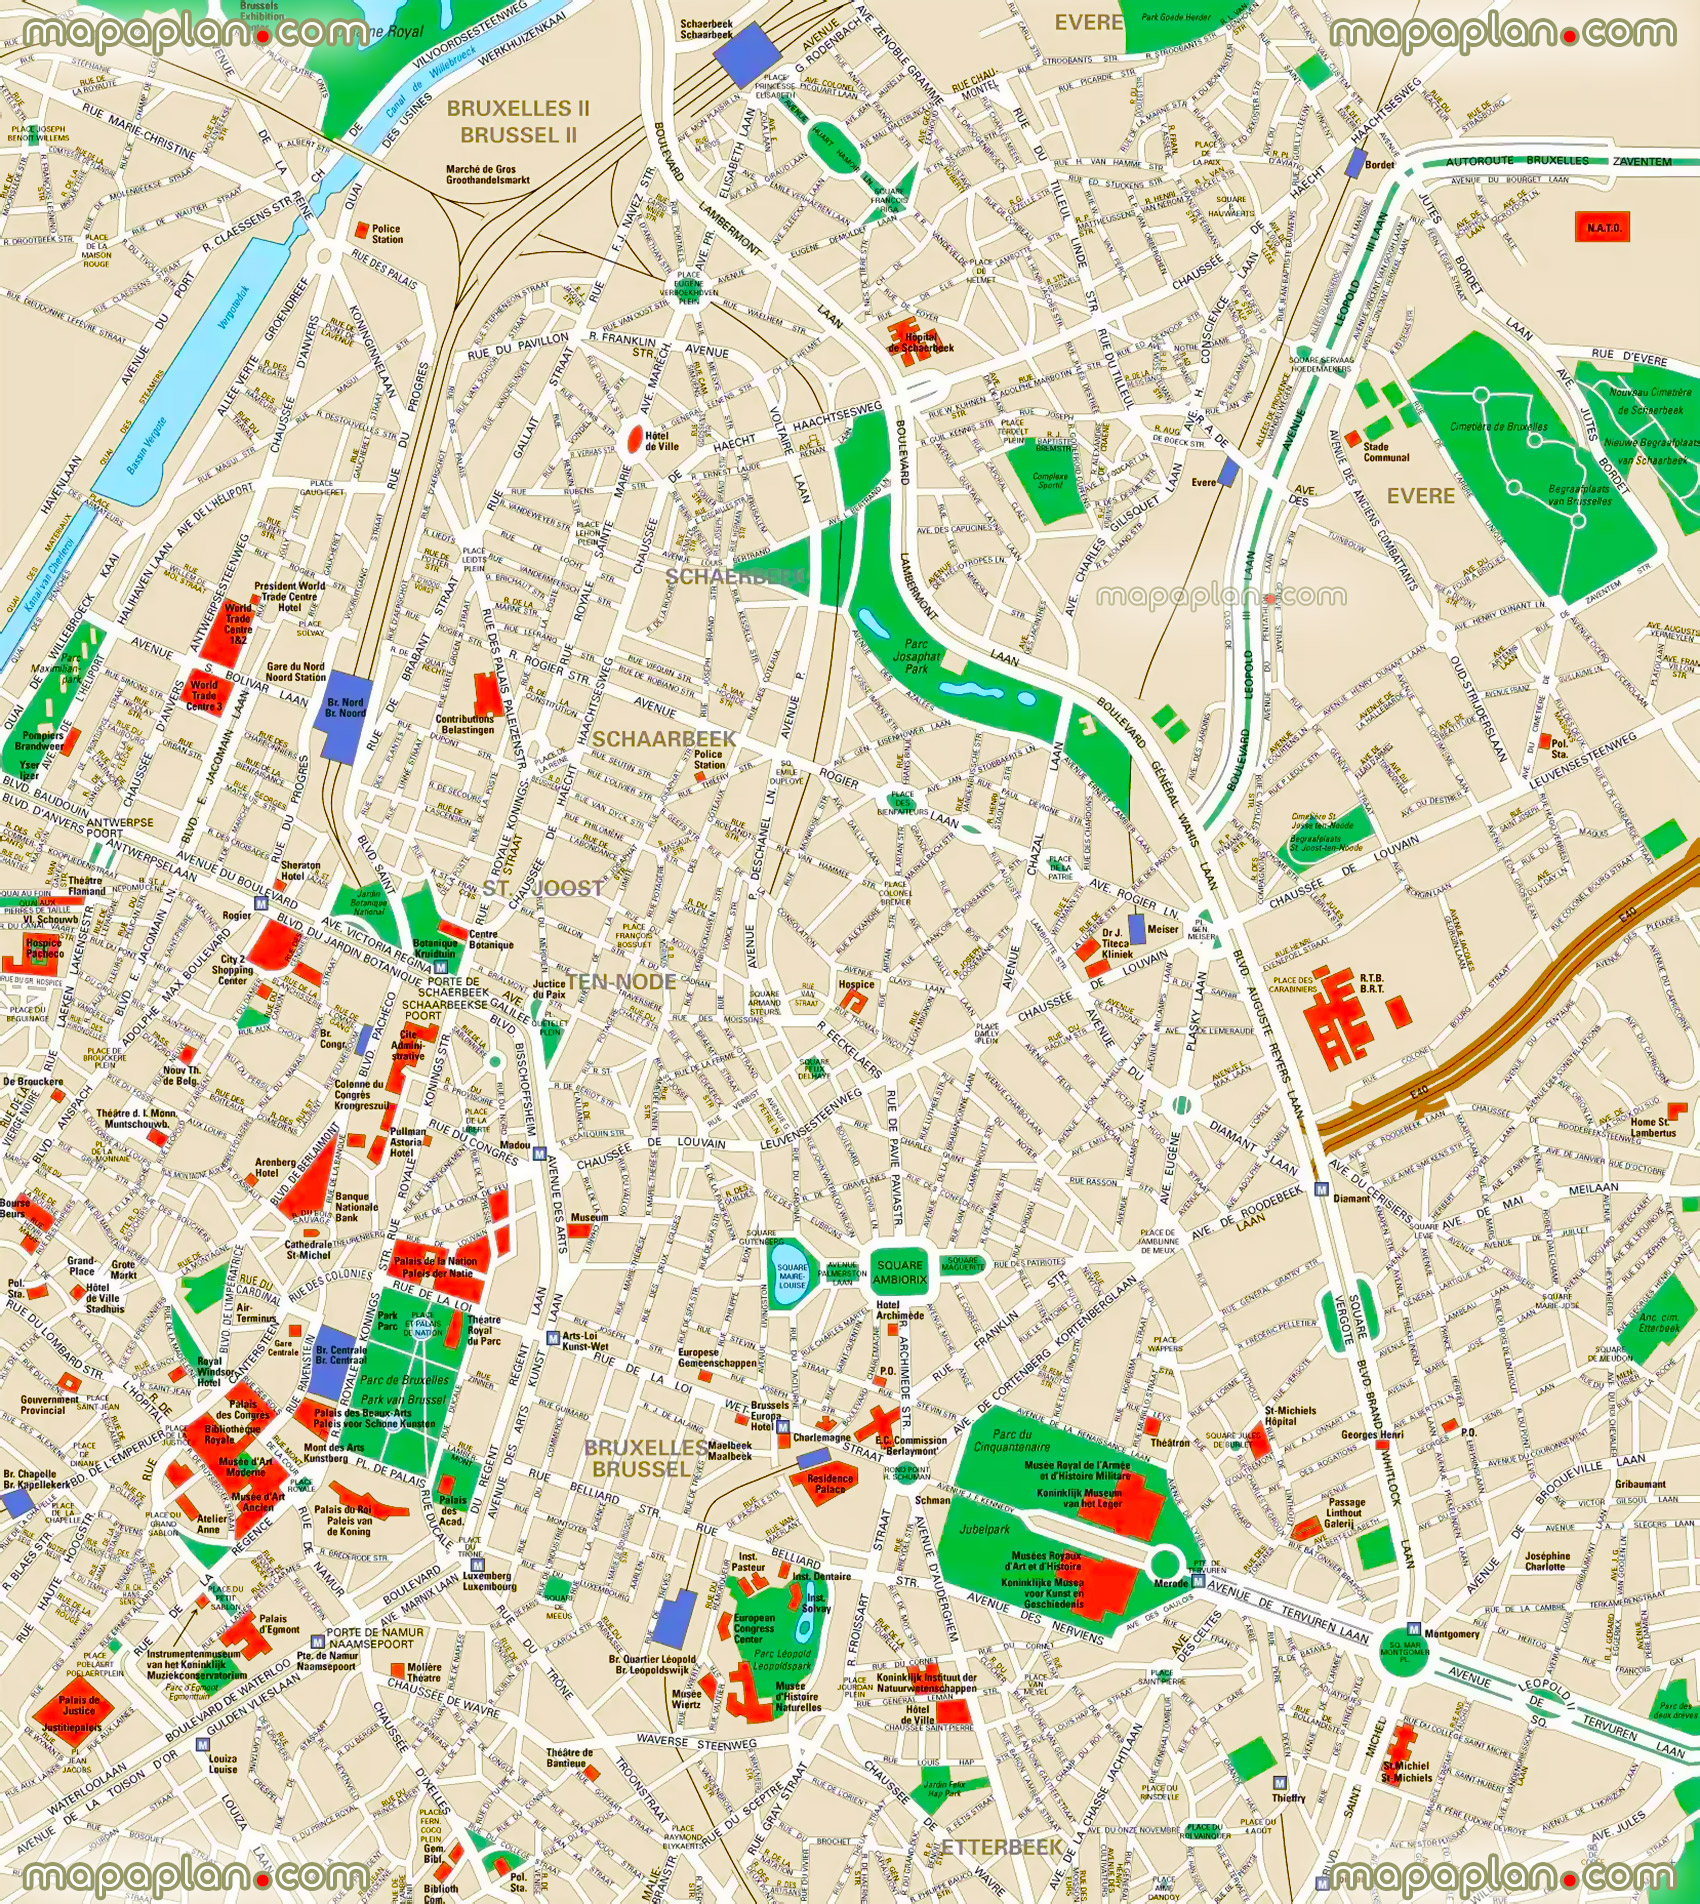 brussels-map-brussels-city-center-offline-3d-interactive-guide-jpg